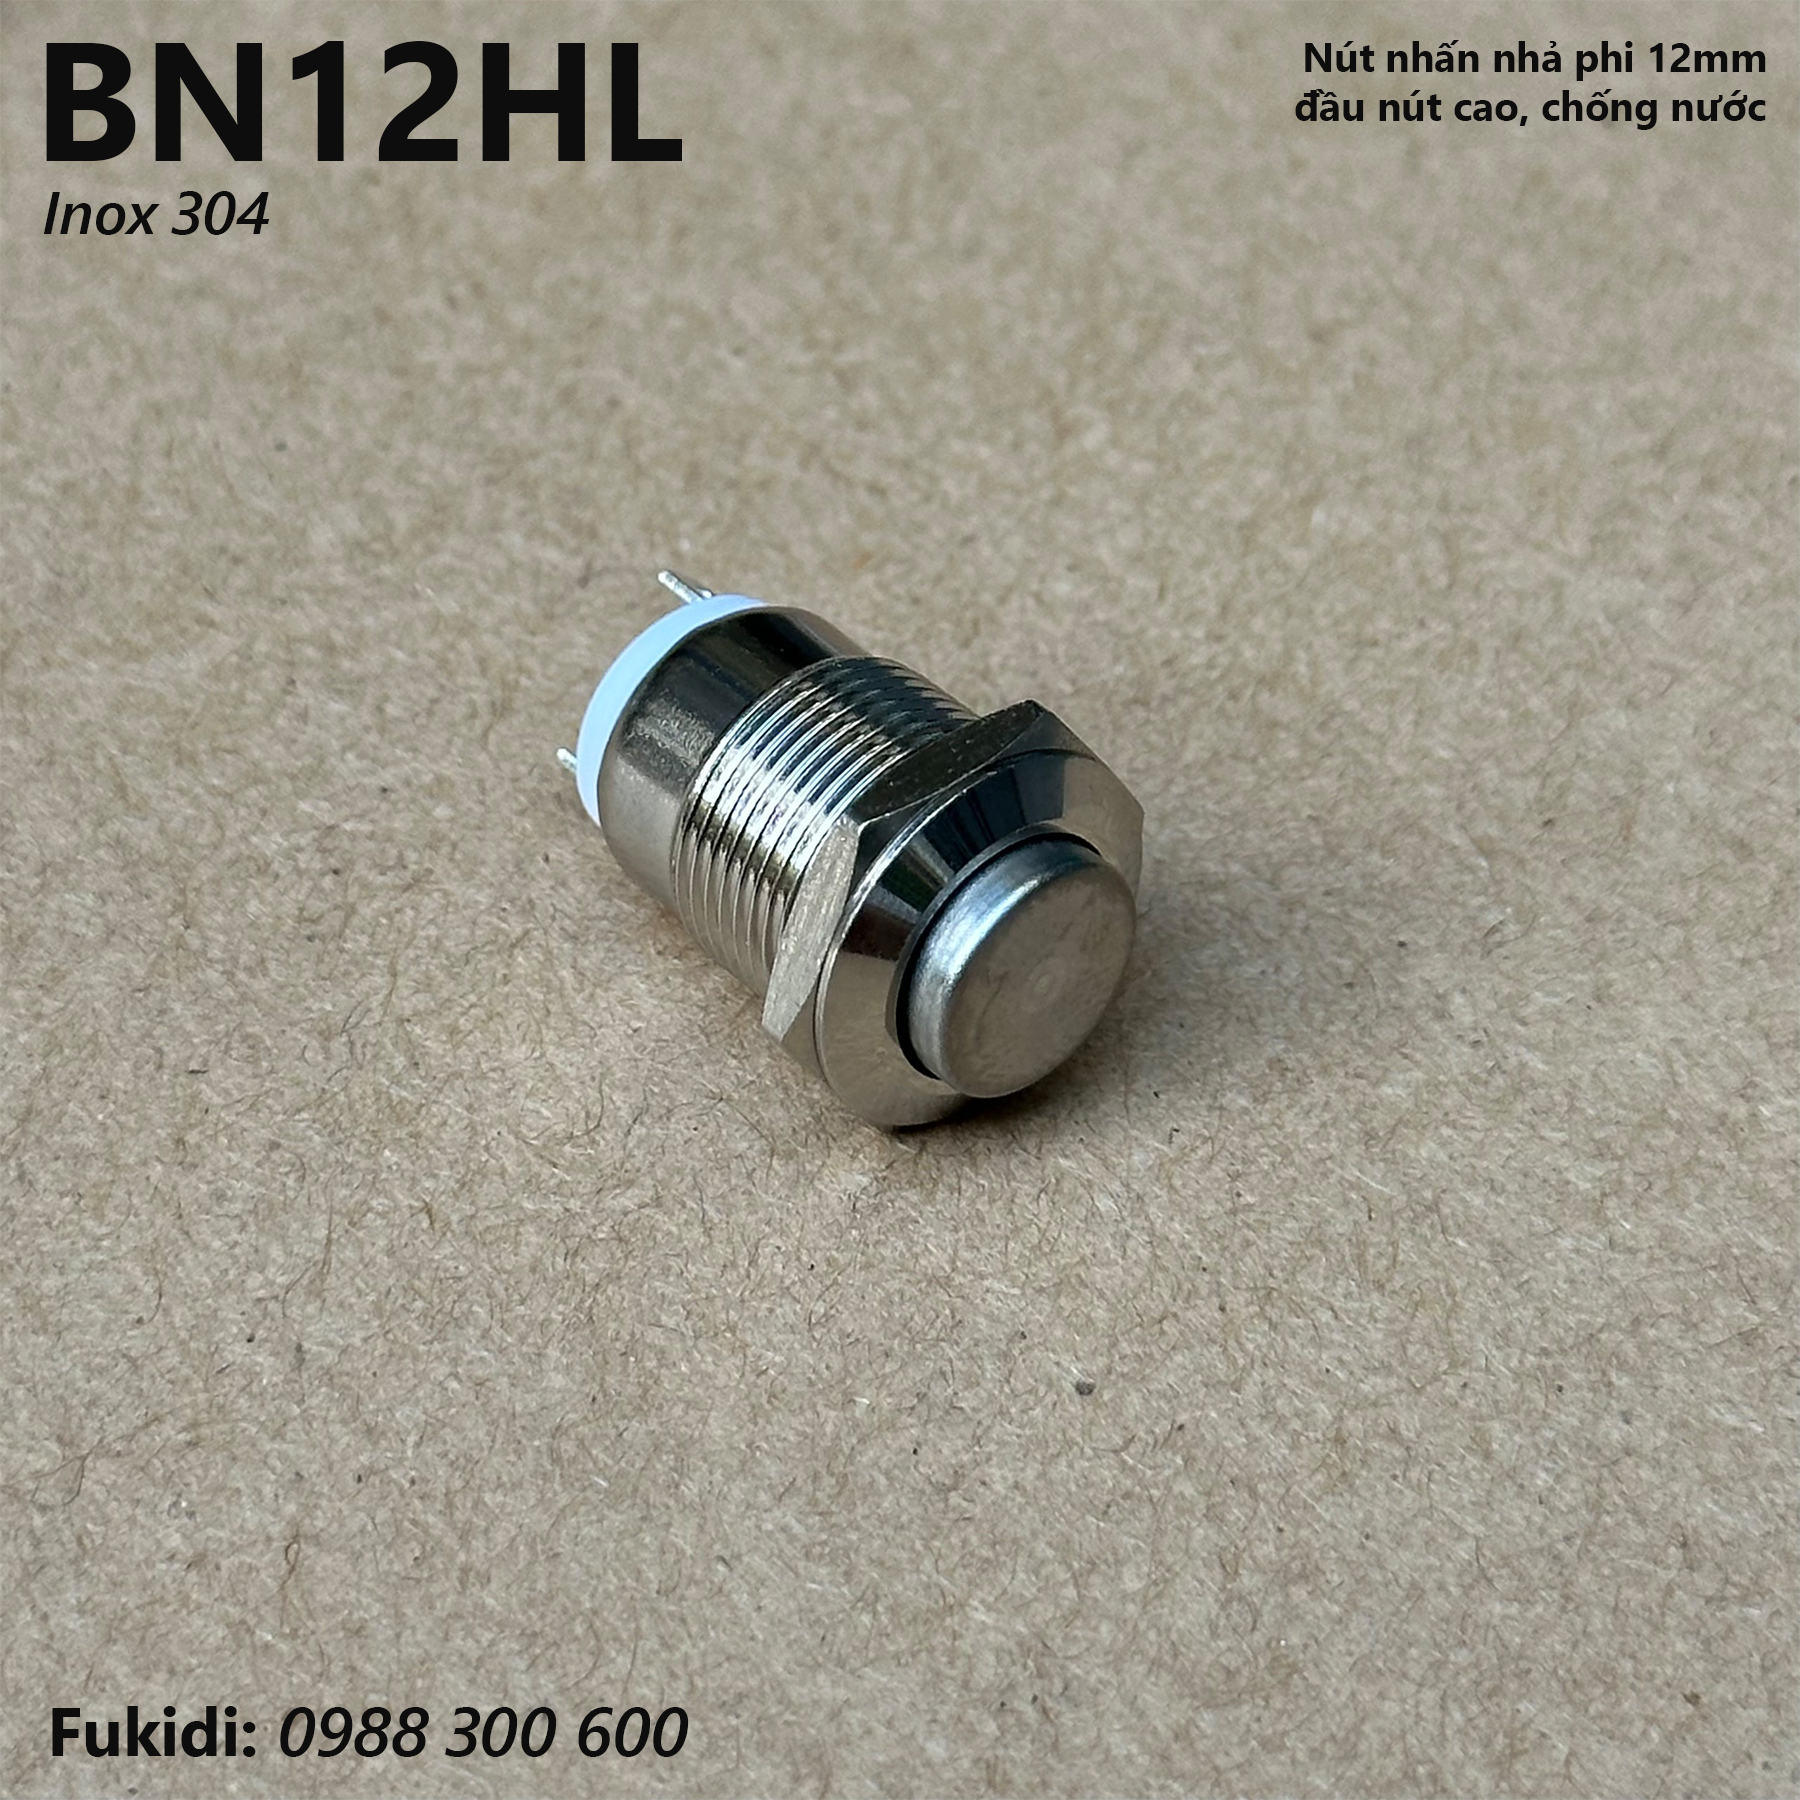 Nút nhấn nhả inox 304 phi 12mm, đầu nút cao, chống thấm nước - BN12HL